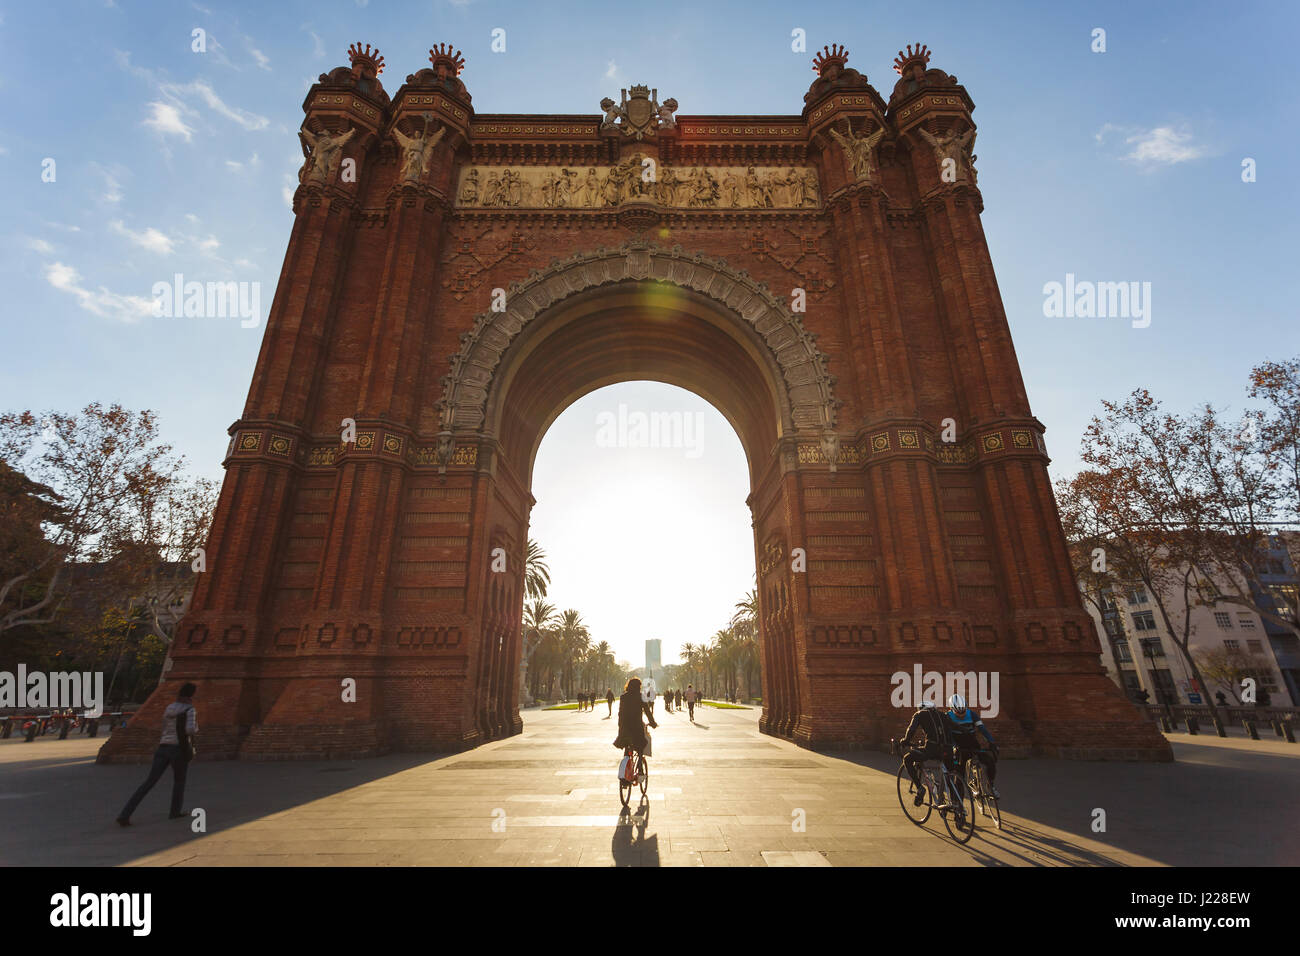 Barcelona, Spanien - 6. Januar 2017: The Arc de Triomph mit Radfahrer wer wird durch den Torbogen in den Vordergrund, sonniger Morgen Stockfoto